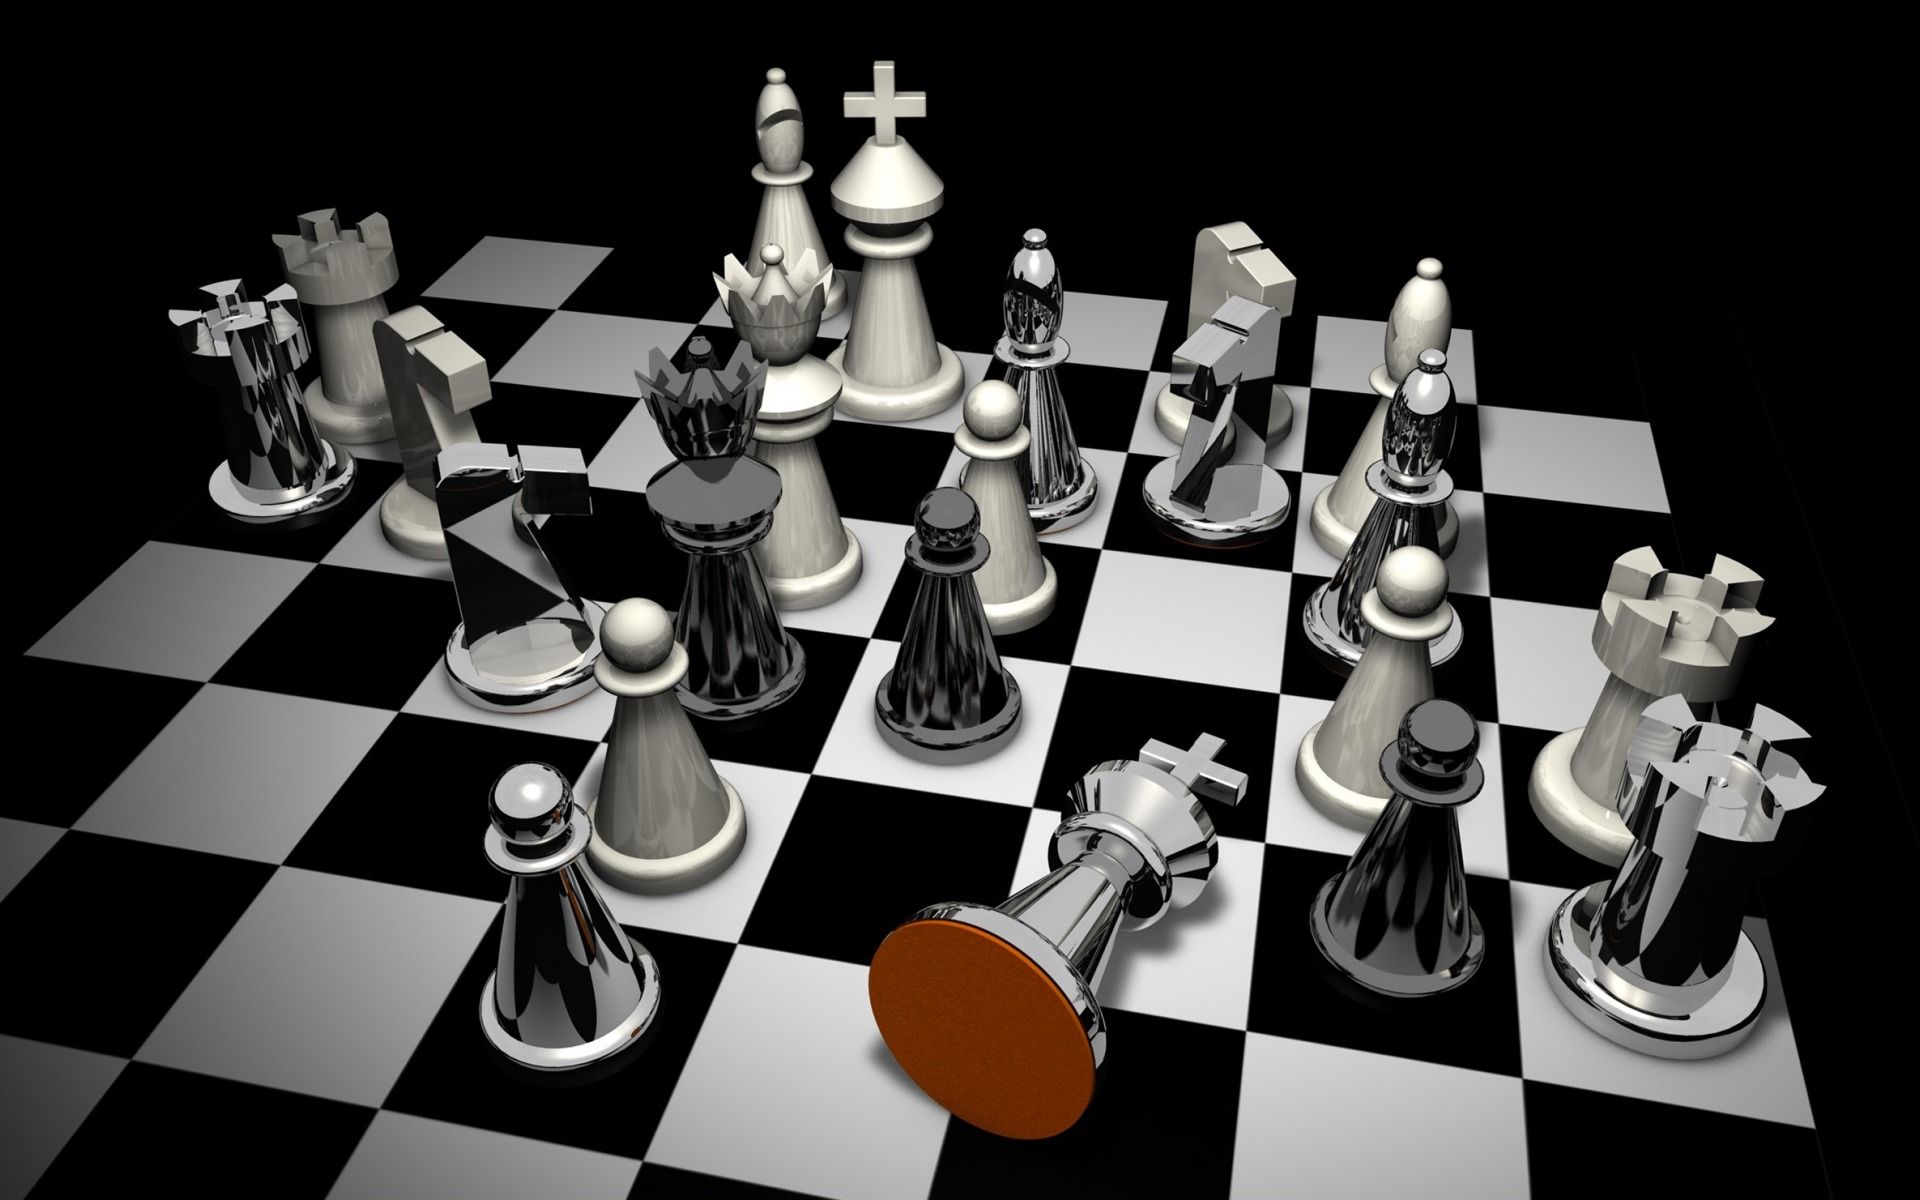 Fondos de pantalla de ajedrez - FondosMil